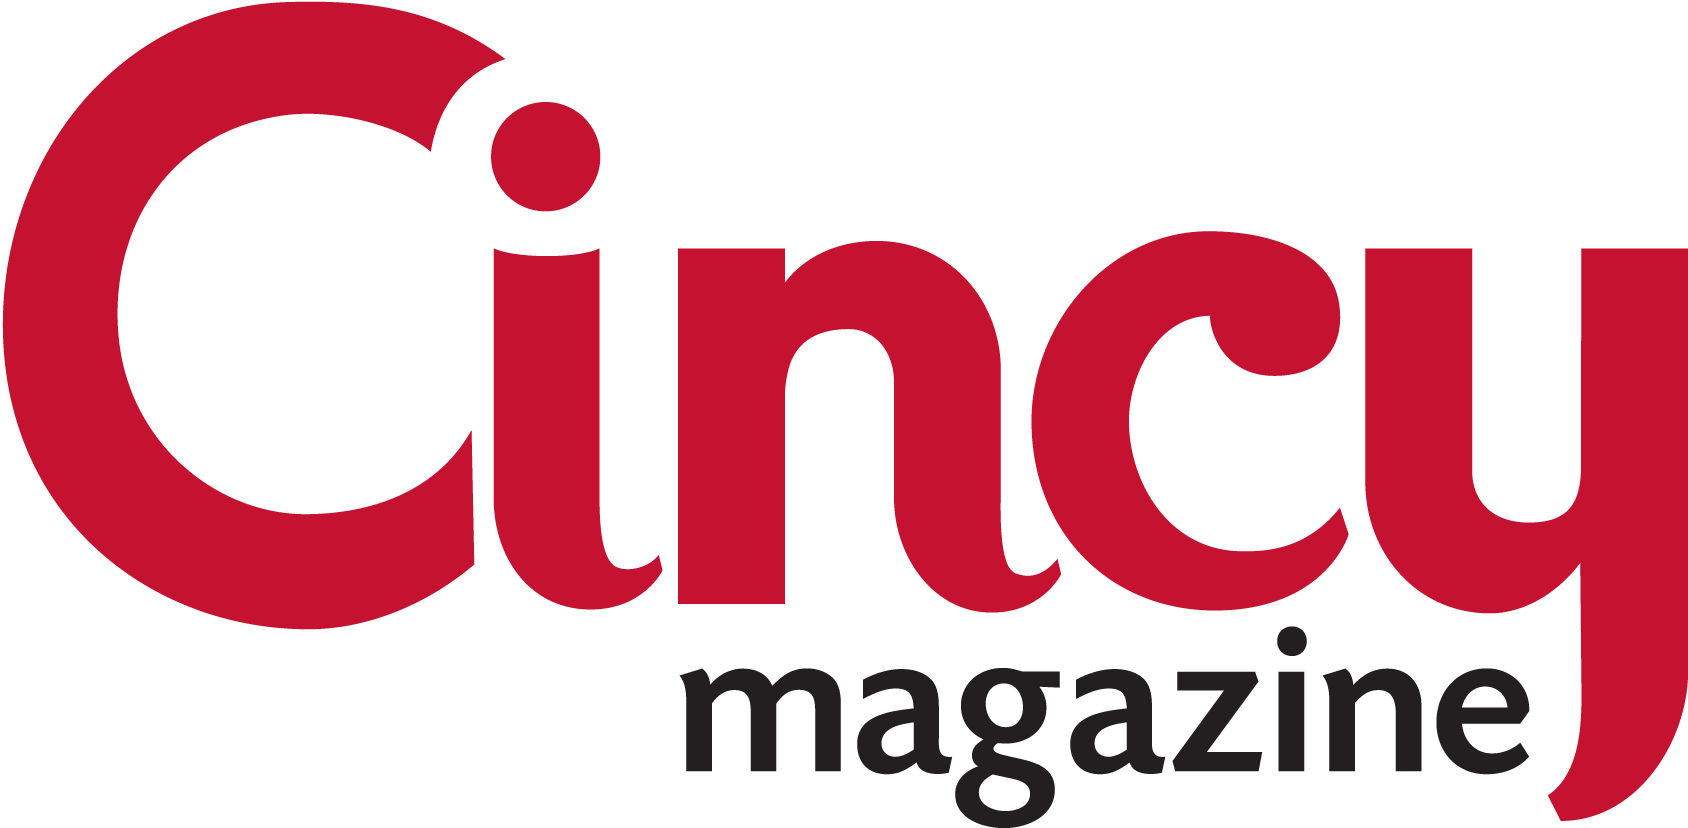 Cincy Magazine Cooltech